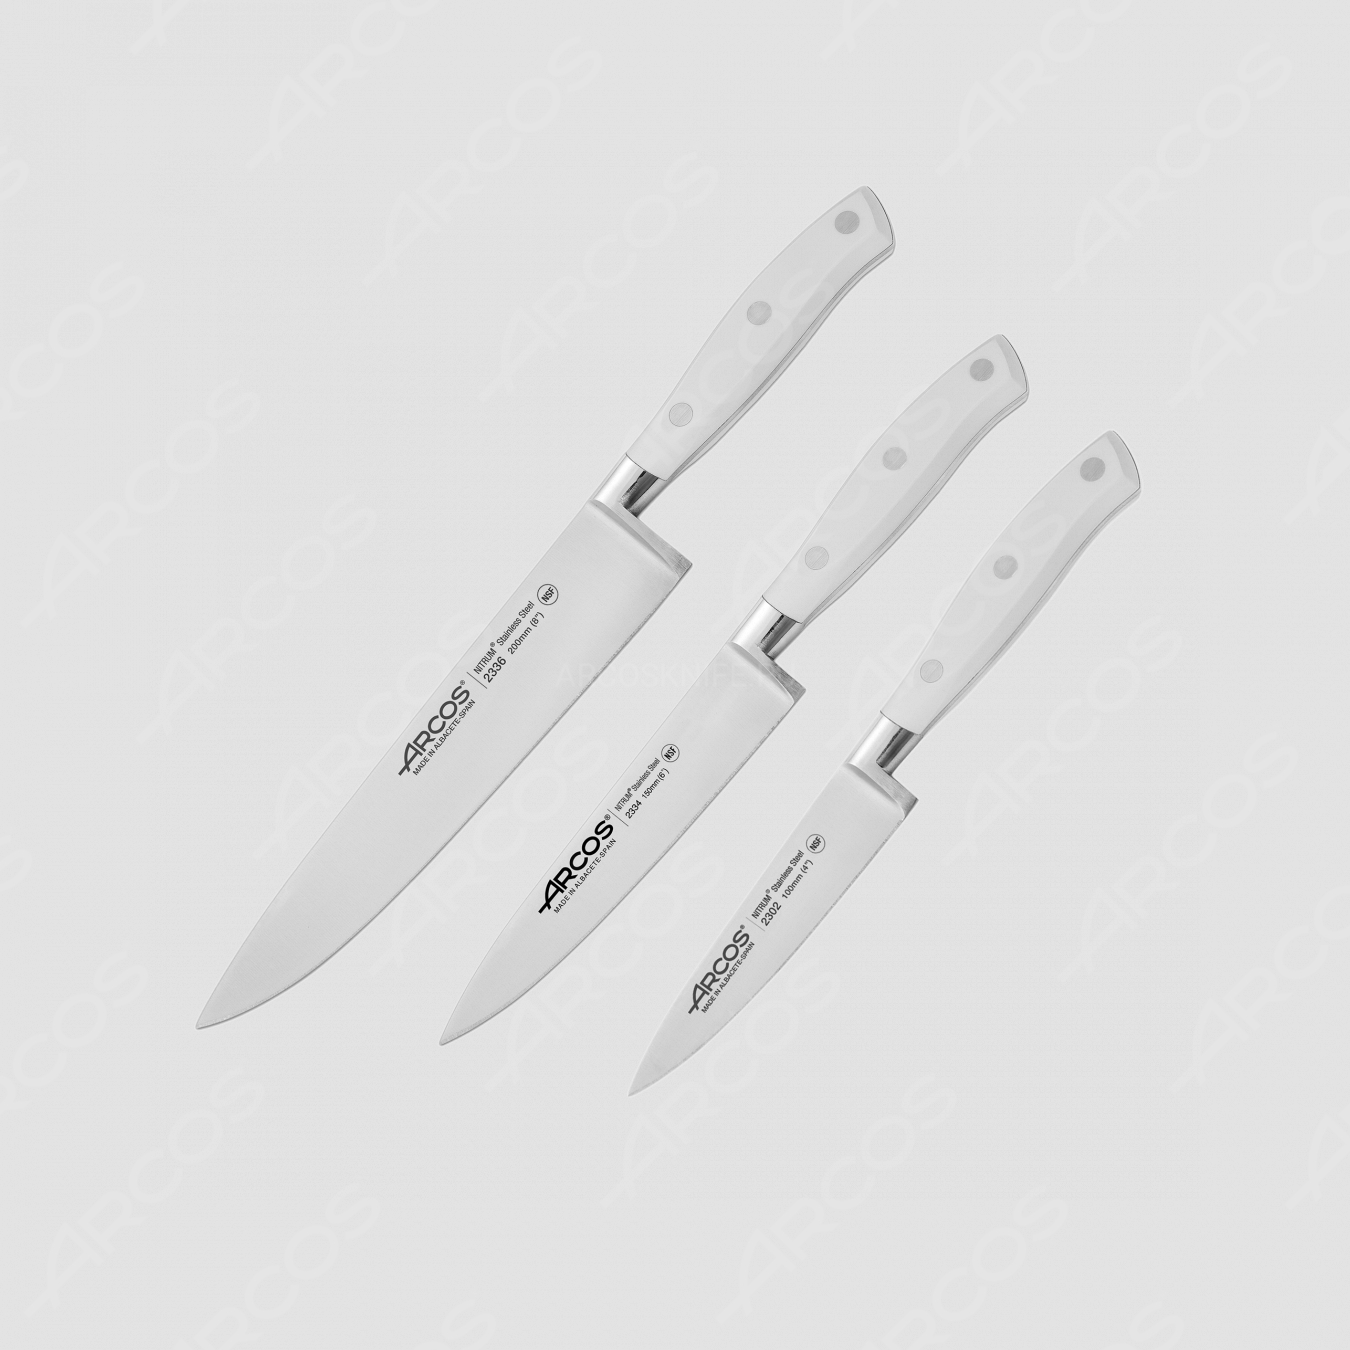 Набор кухонных ножей 3 штуки (10 см, 15 см, 20 см), серия Riviera Blanca, ARCOS, Испания